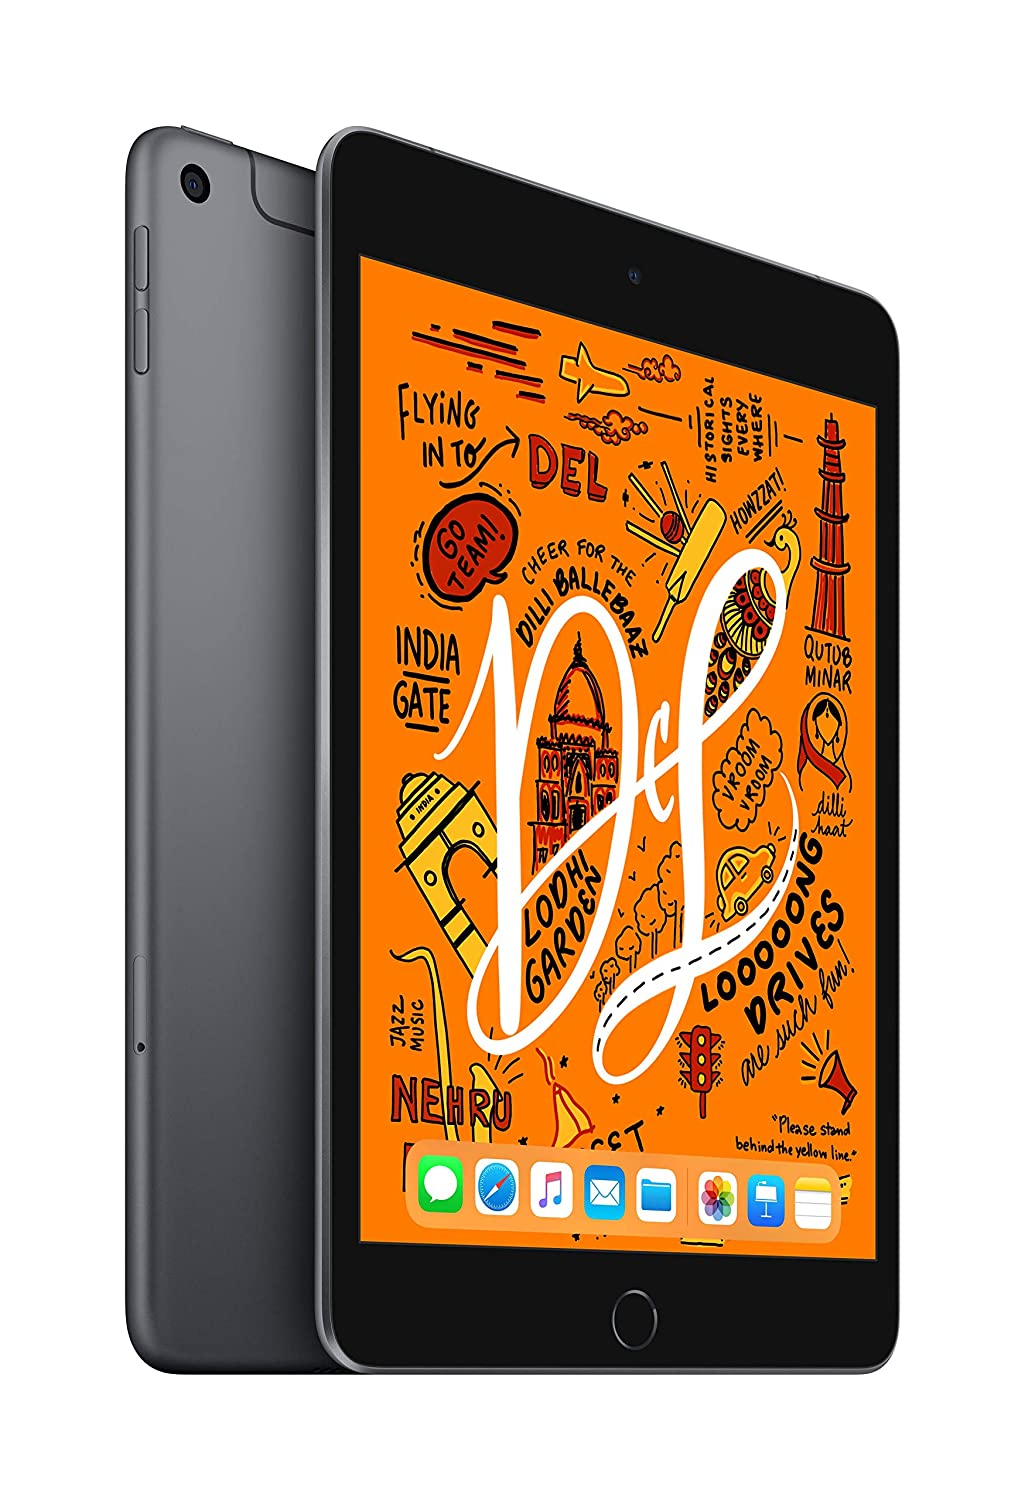 Penawaran Amazon: Anak Anda akan menyukai hadiah 100%, beli iPad mini dari Amazon dengan harga kurang dari 15 ribu